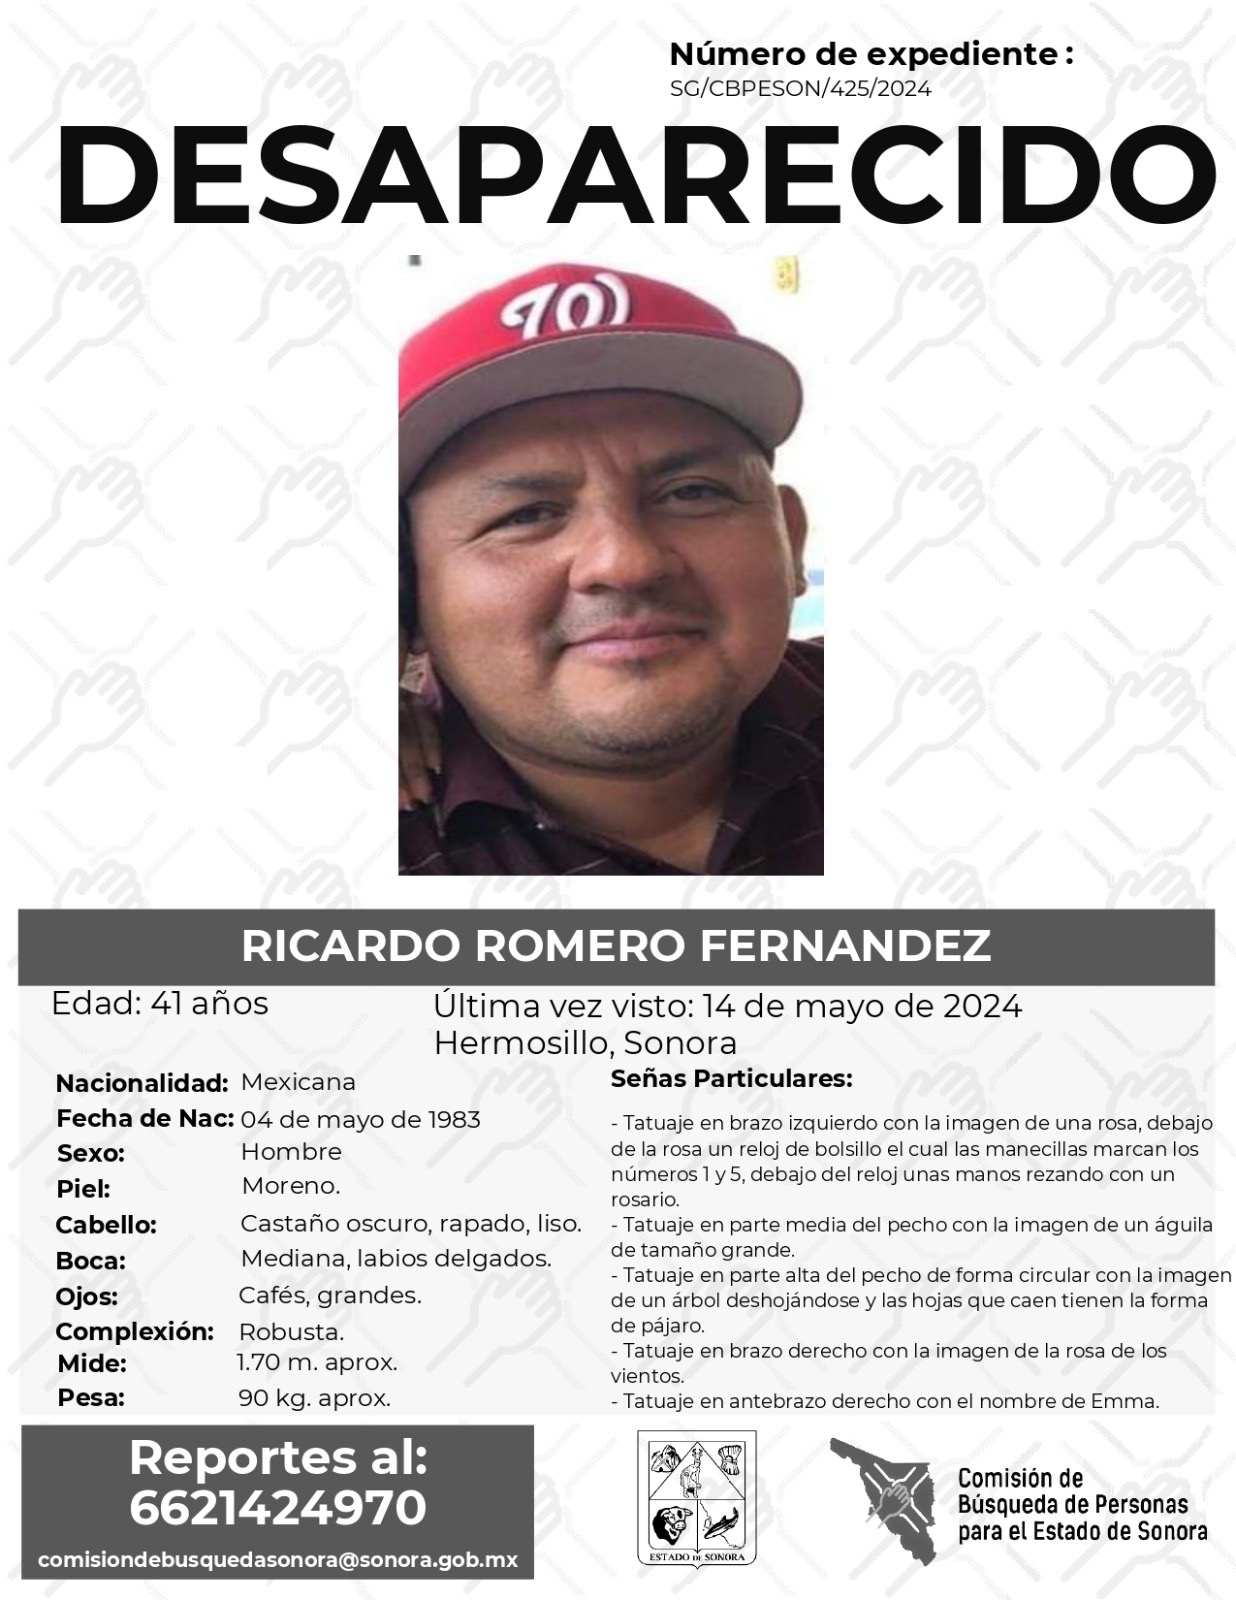 RICARDO ROMERO FERNANDEZ - DESAPARECIDO